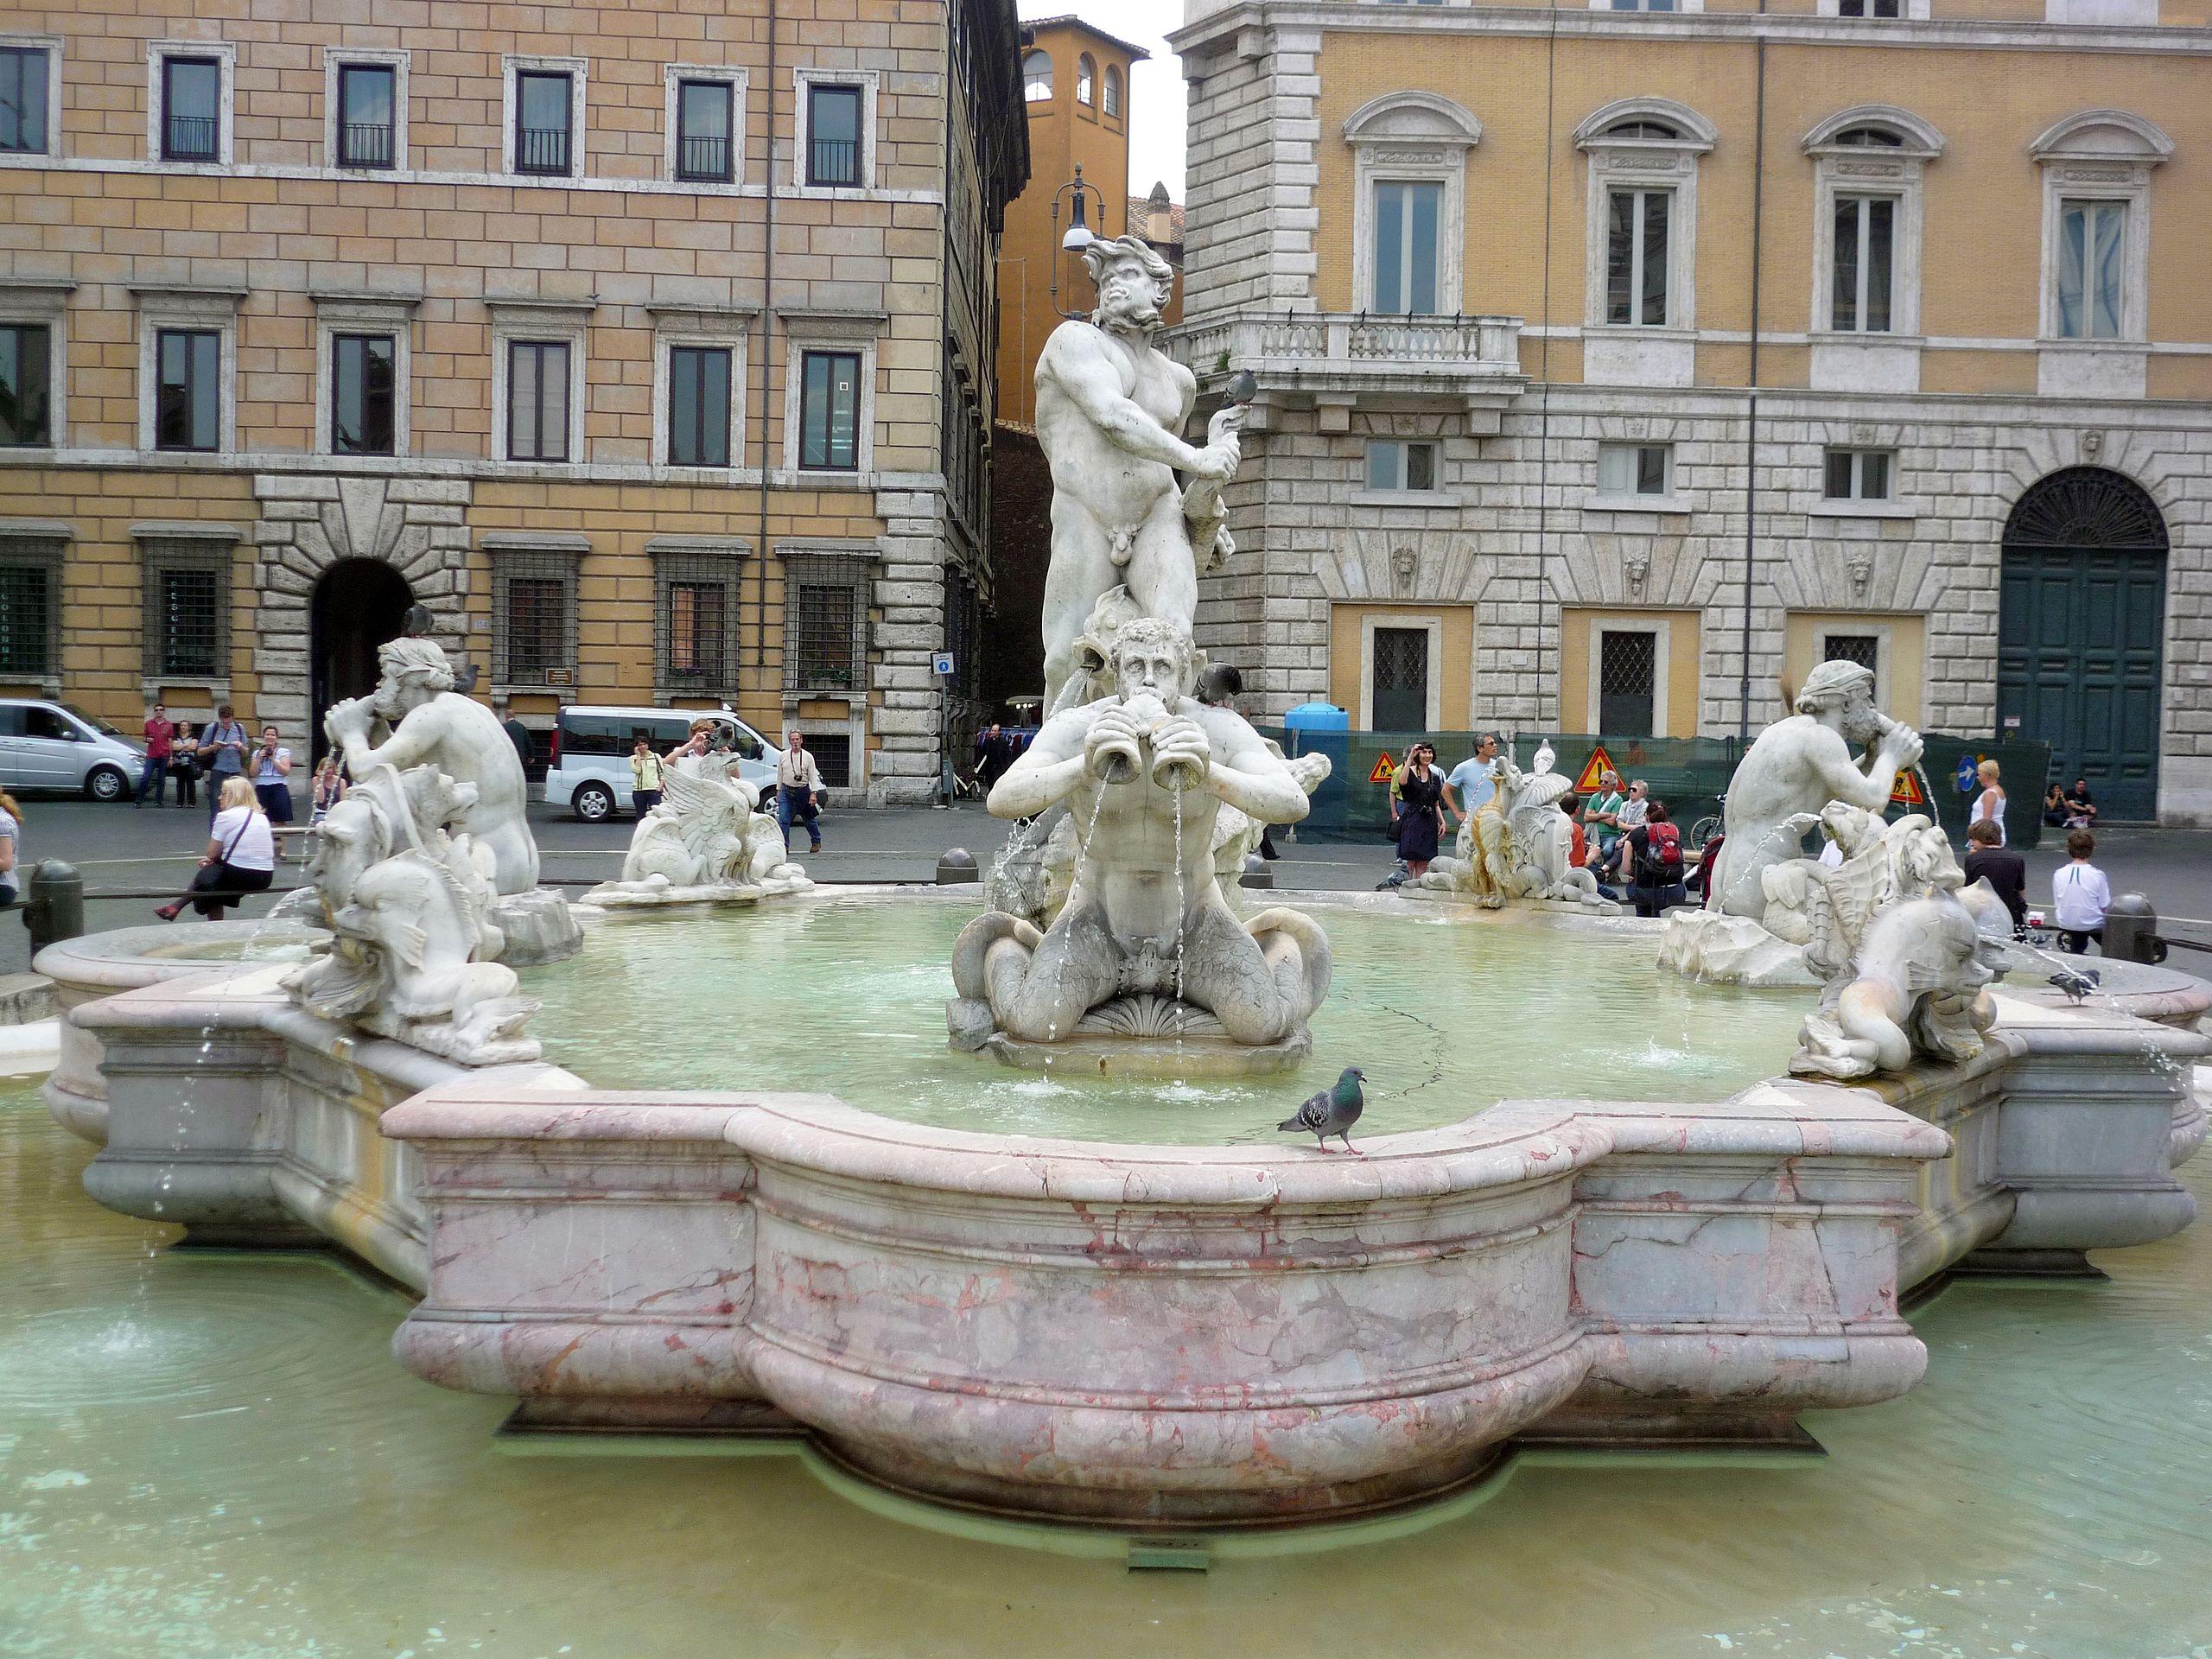 Η πλατεία navona στη Ρώμη